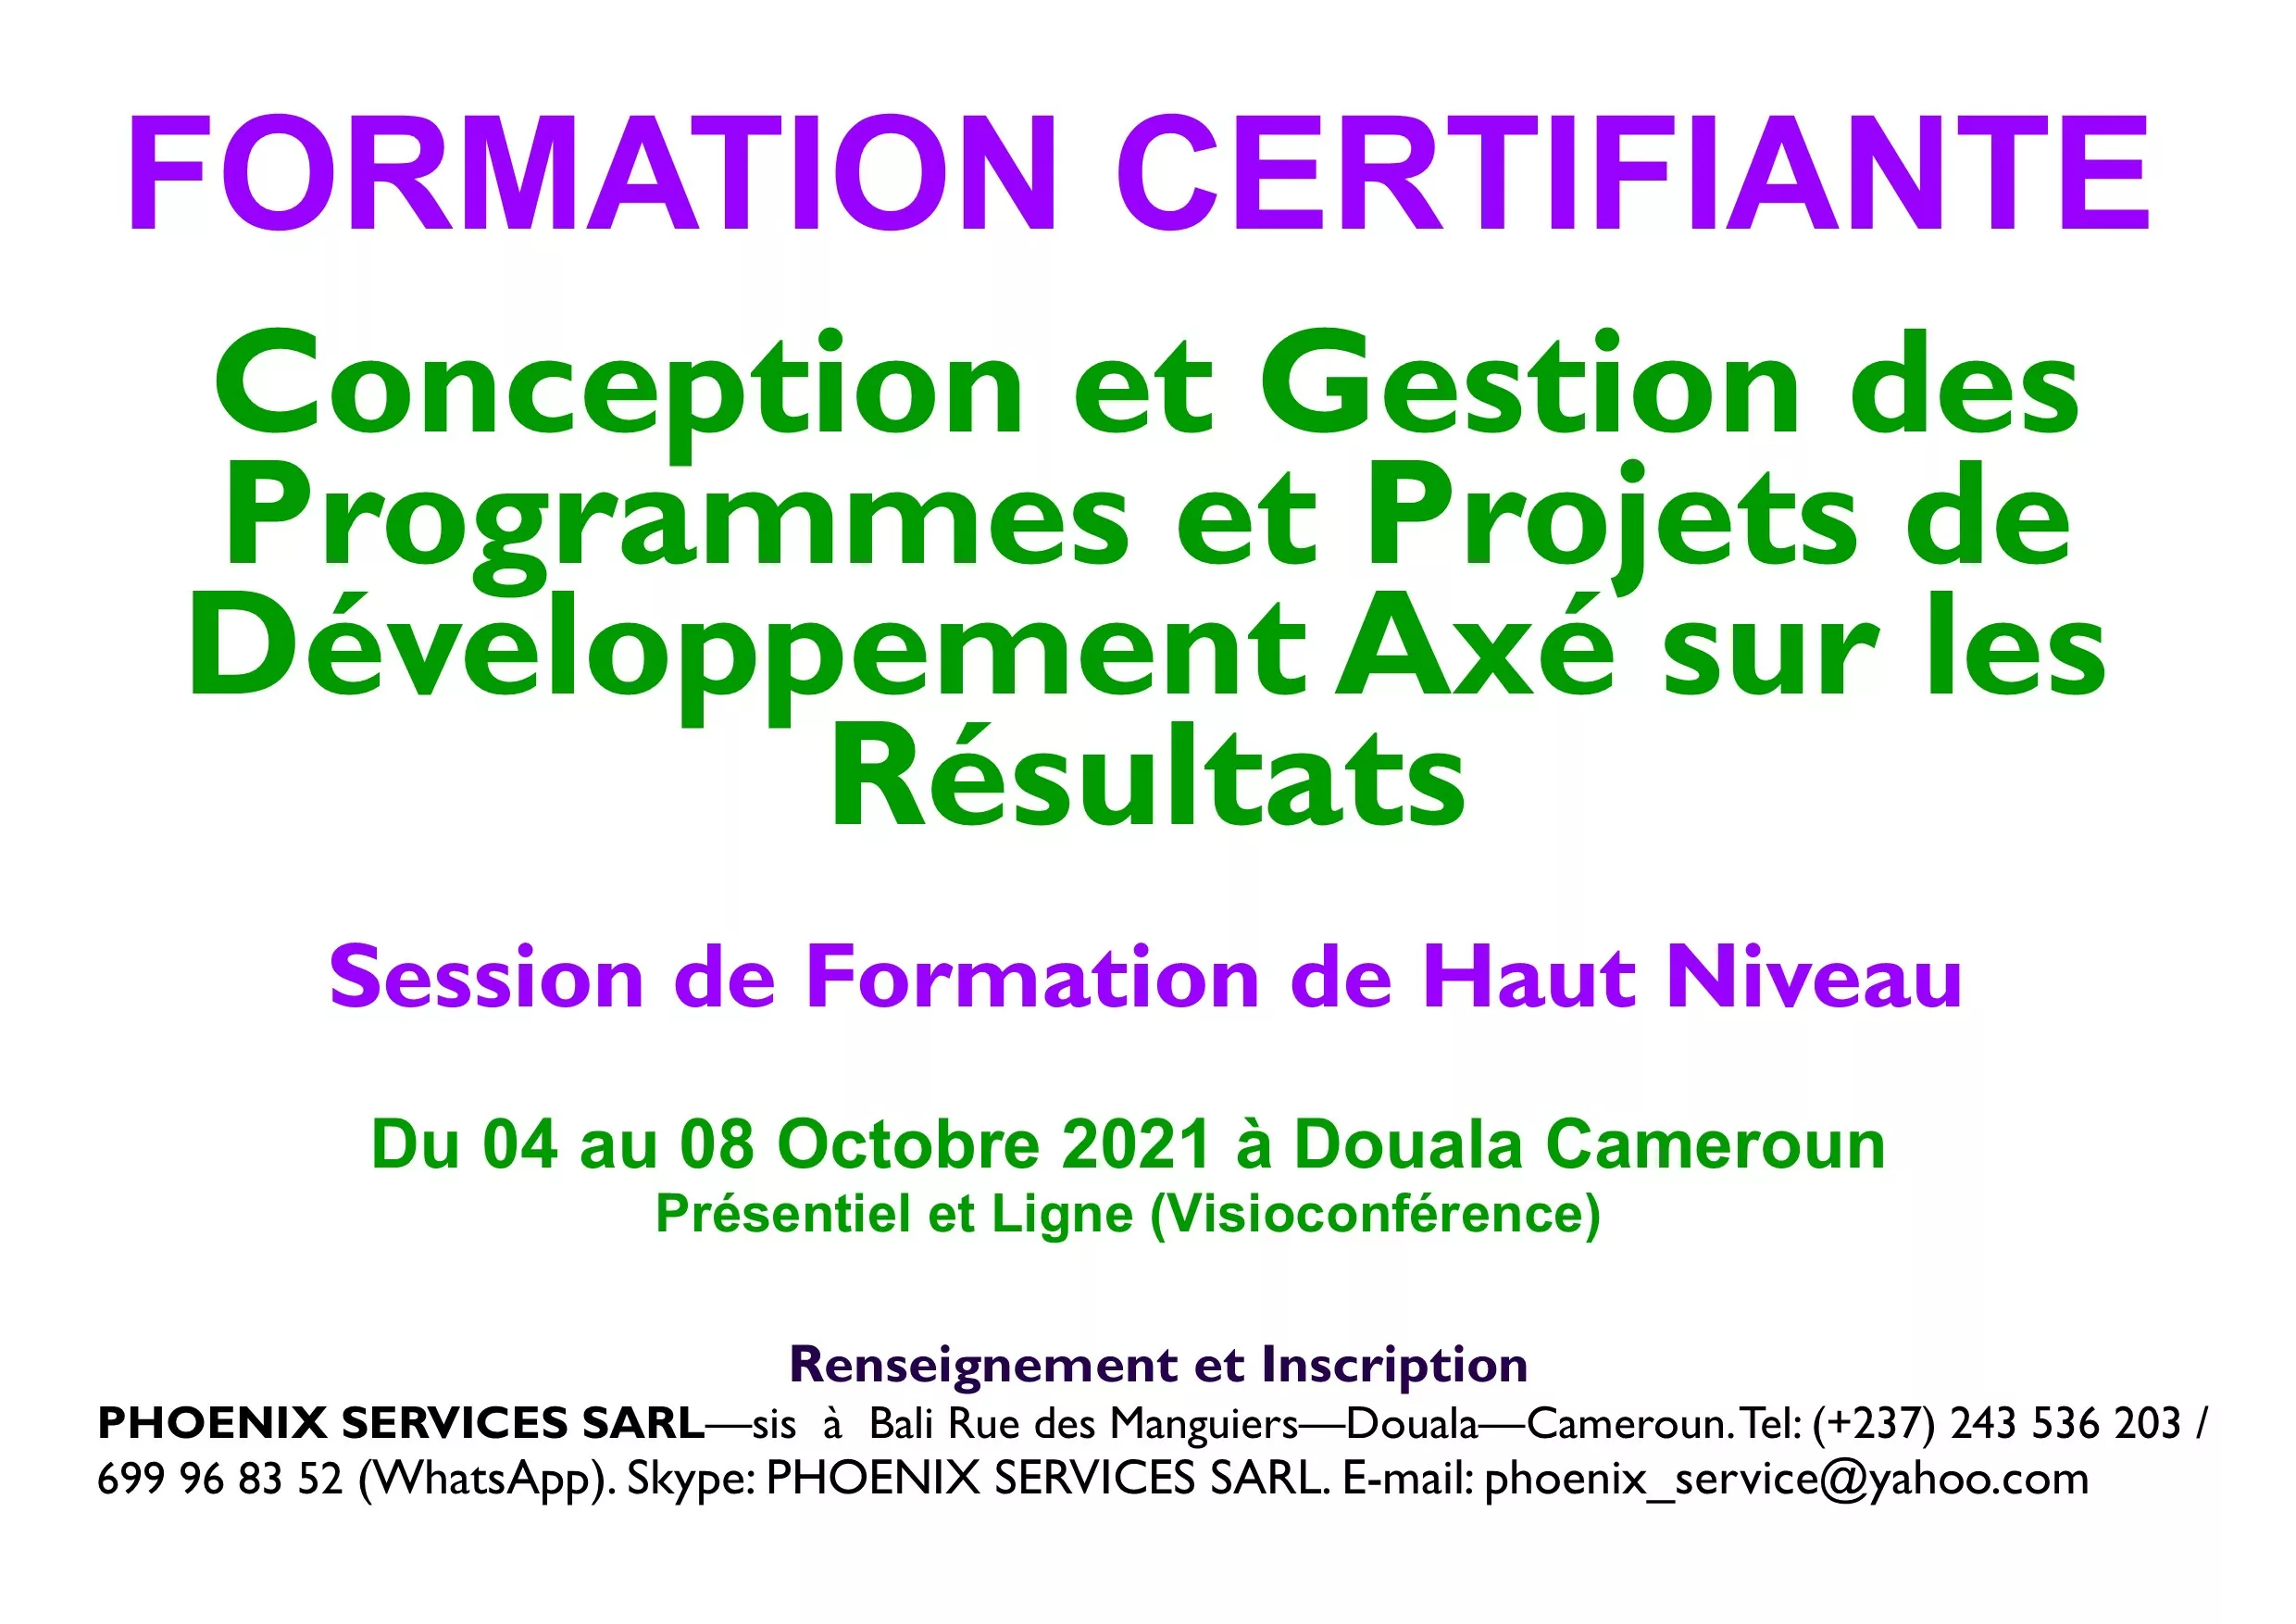 Formation Certifiante: Conception et Gestion des Programmes et Projets de Développement Axé sur les Résultats